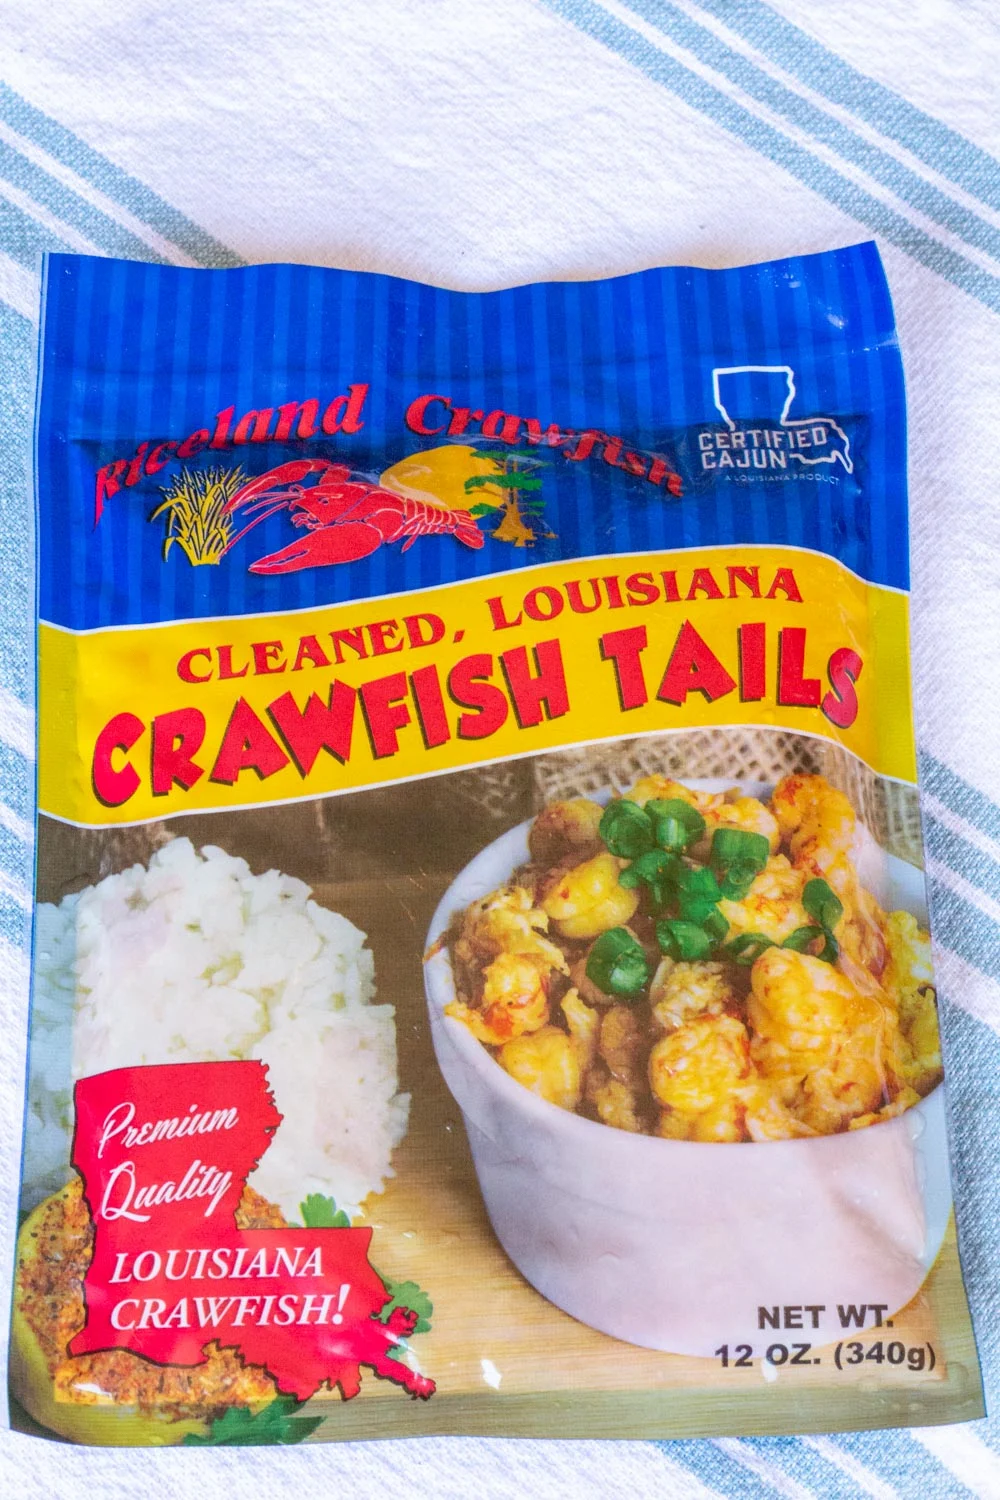 A bag of Louisiana crawfish tails, certified cajun.